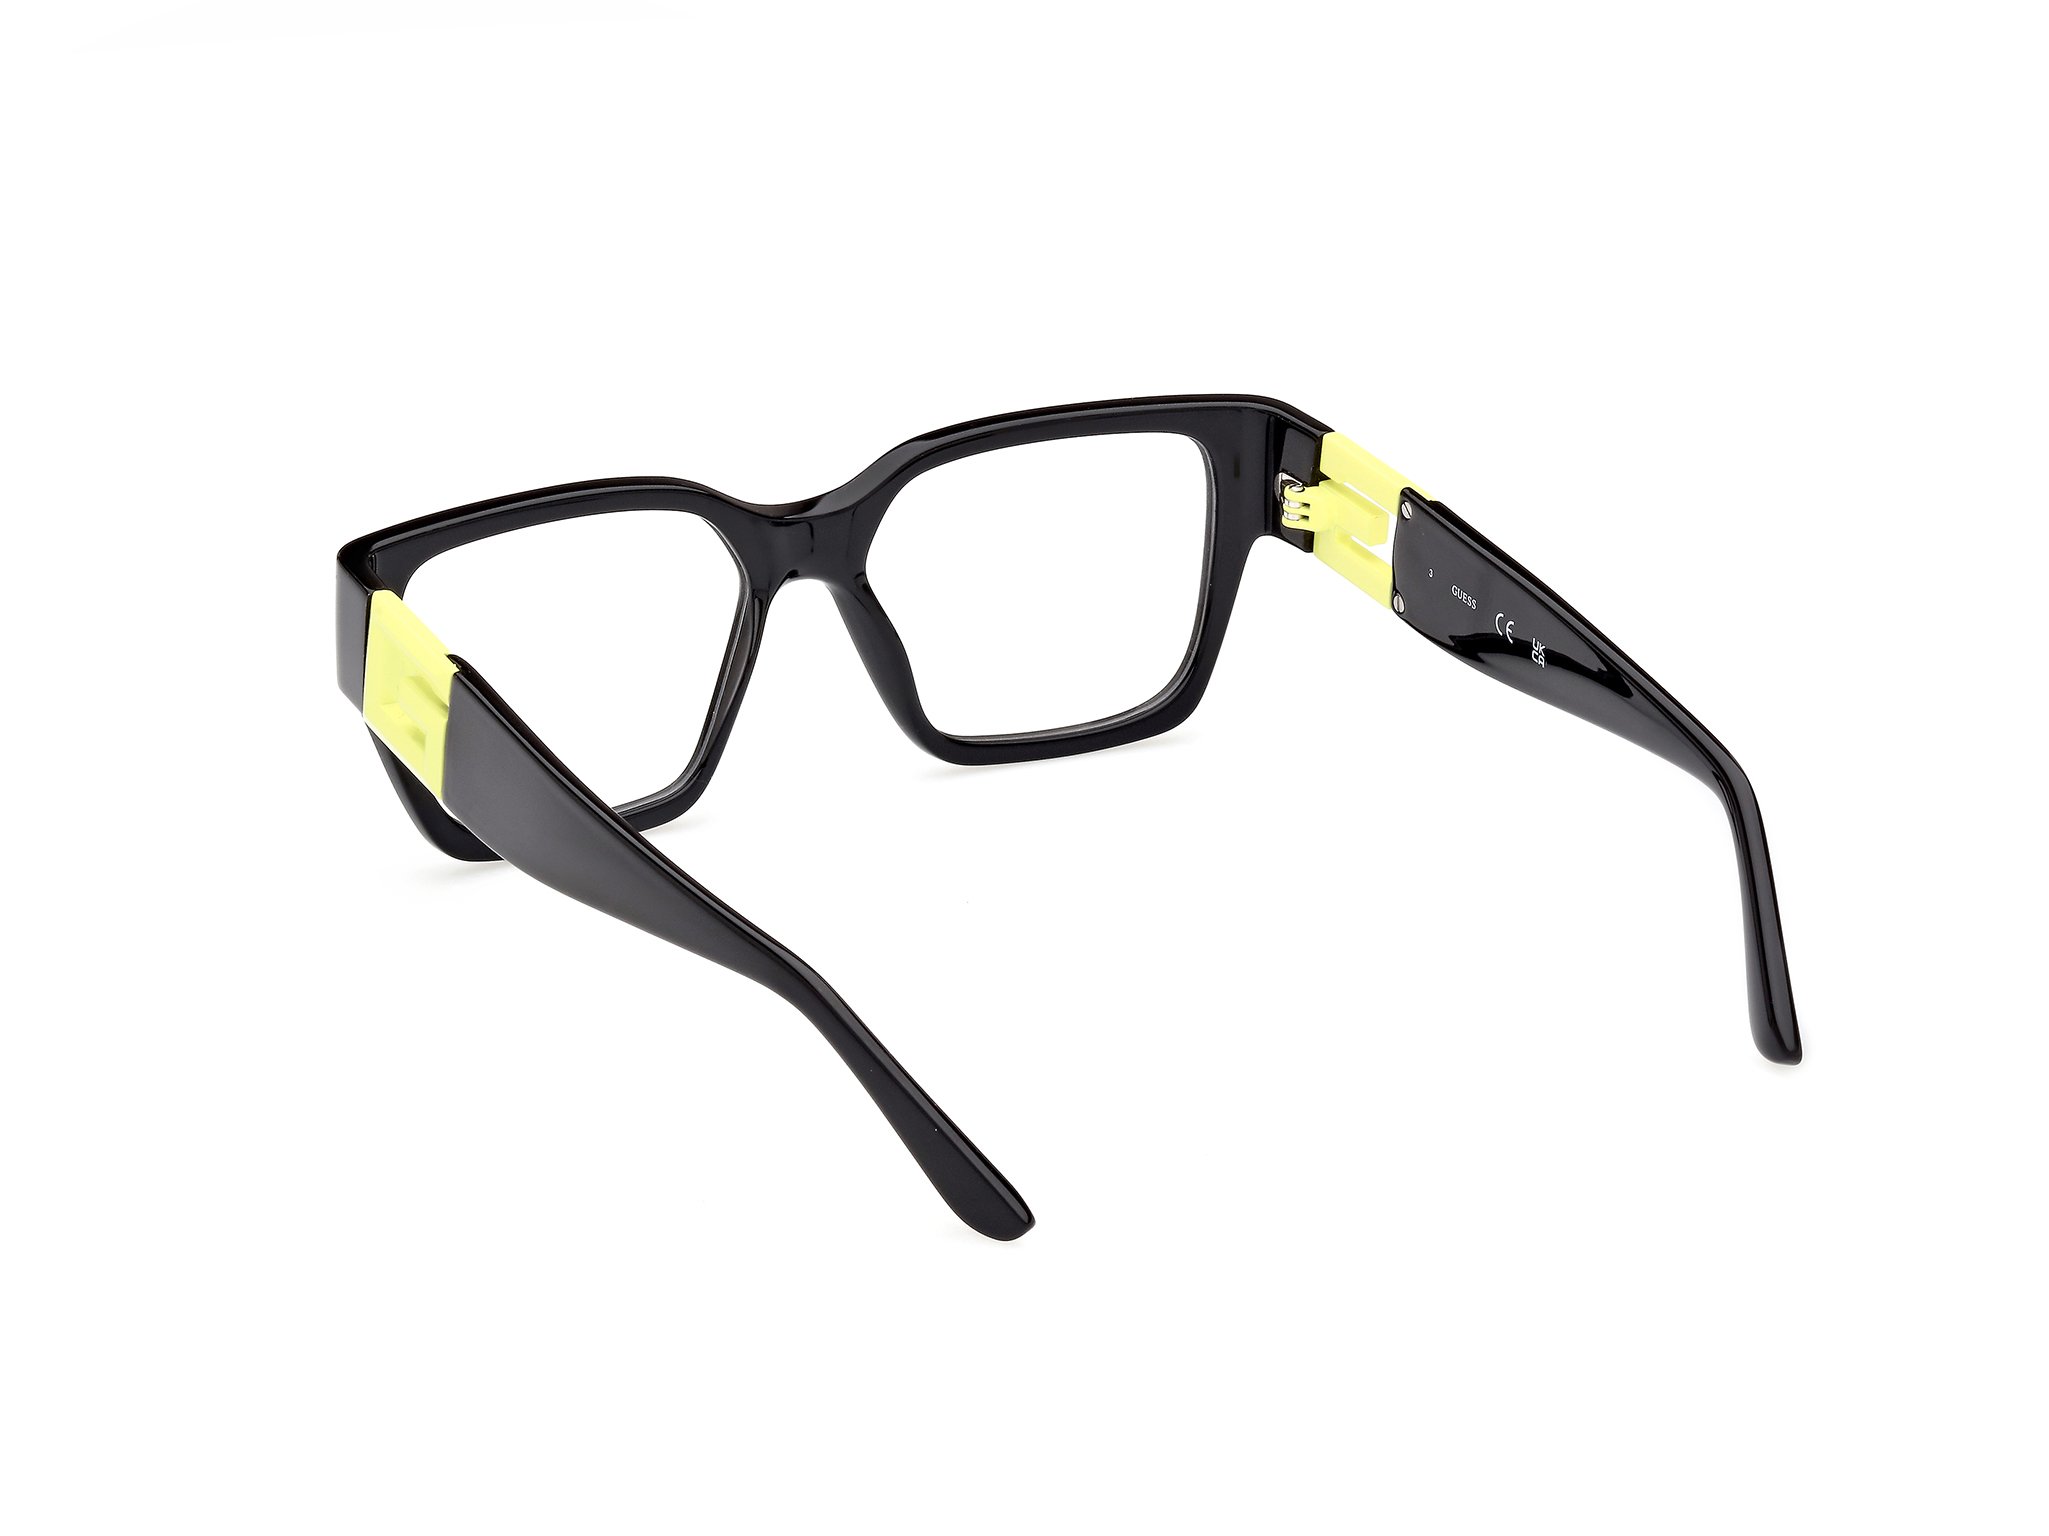 Das Bild zeigt die Korrektionsbrille GU2987 041 von der Marke Guess in schwarz.